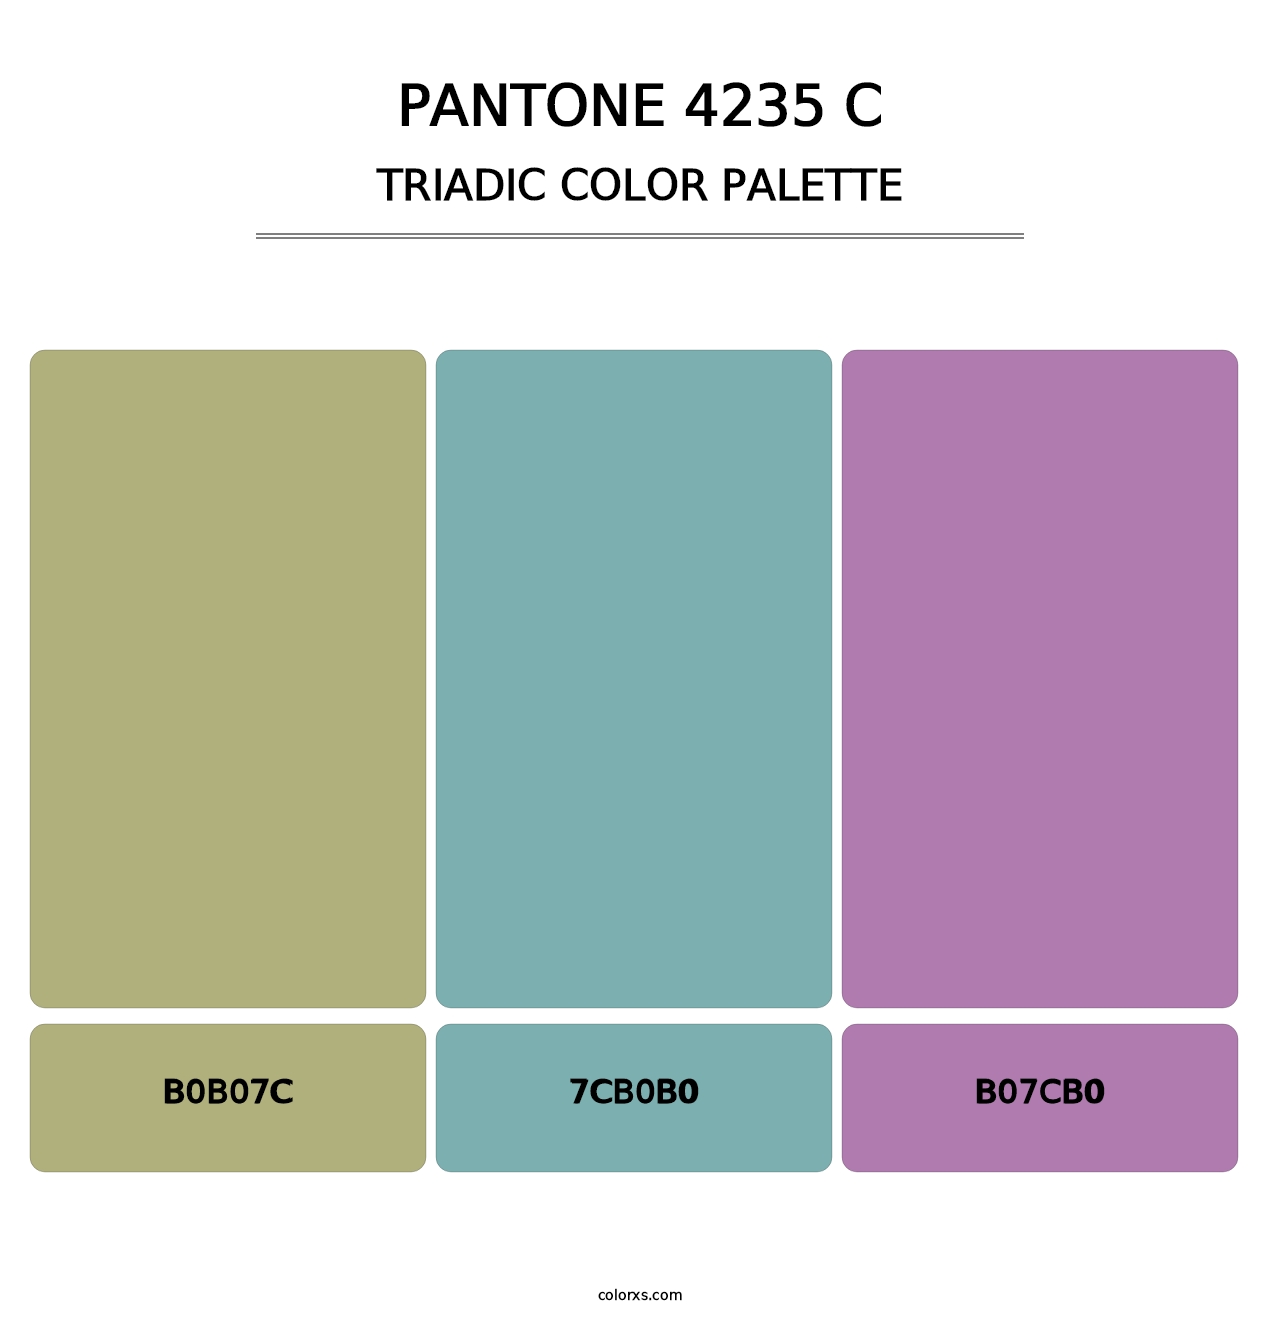 PANTONE 4235 C - Triadic Color Palette